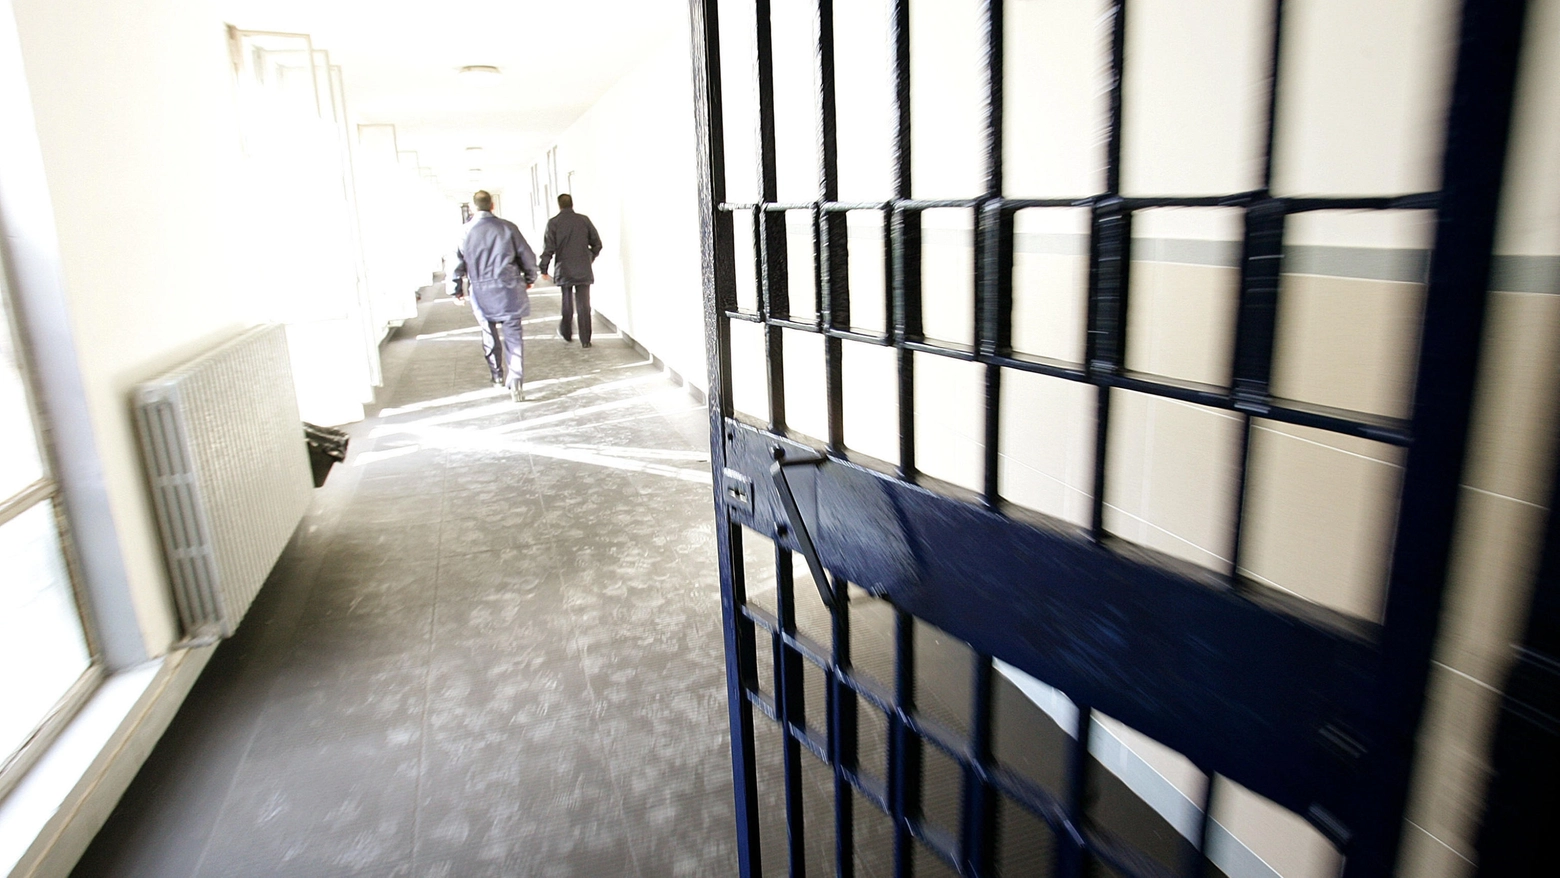 Denuncia del sindacato autonomo della polizia penitenziaria: “Situazione molto grave, servono interventi immediati per la sicurezza”